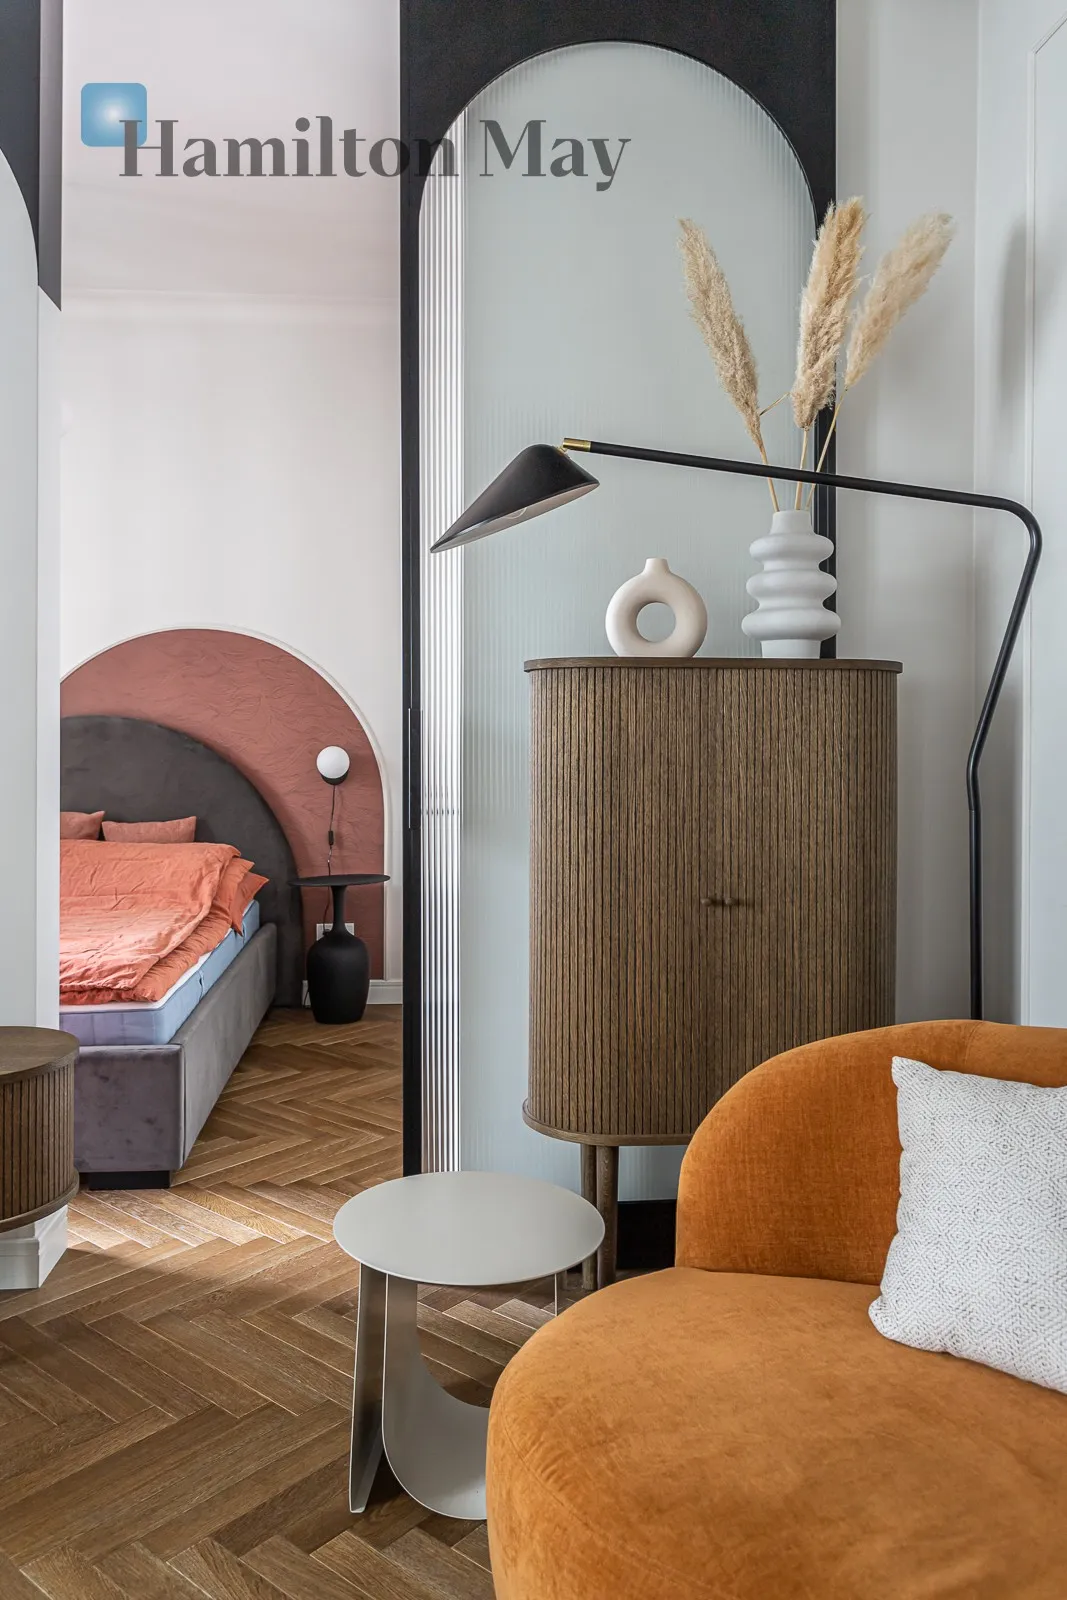 Przytulny apartament  na wynajem w zrewitalizowanej kamienicy w centrum Warszawy